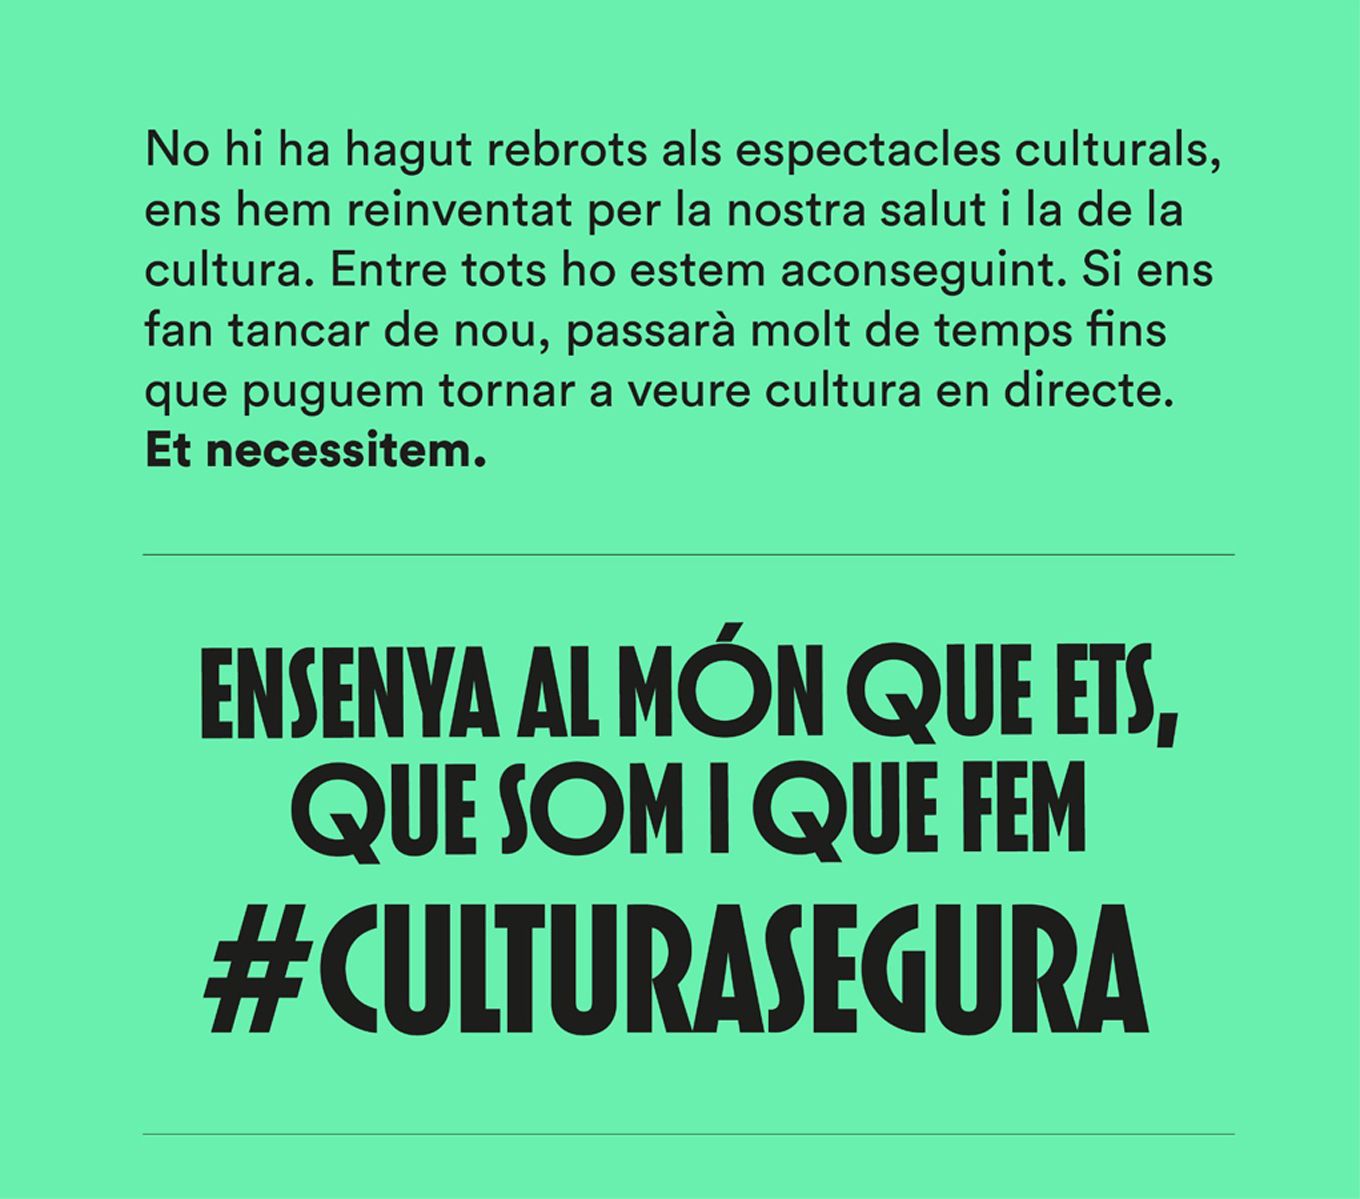 La cultura també cura